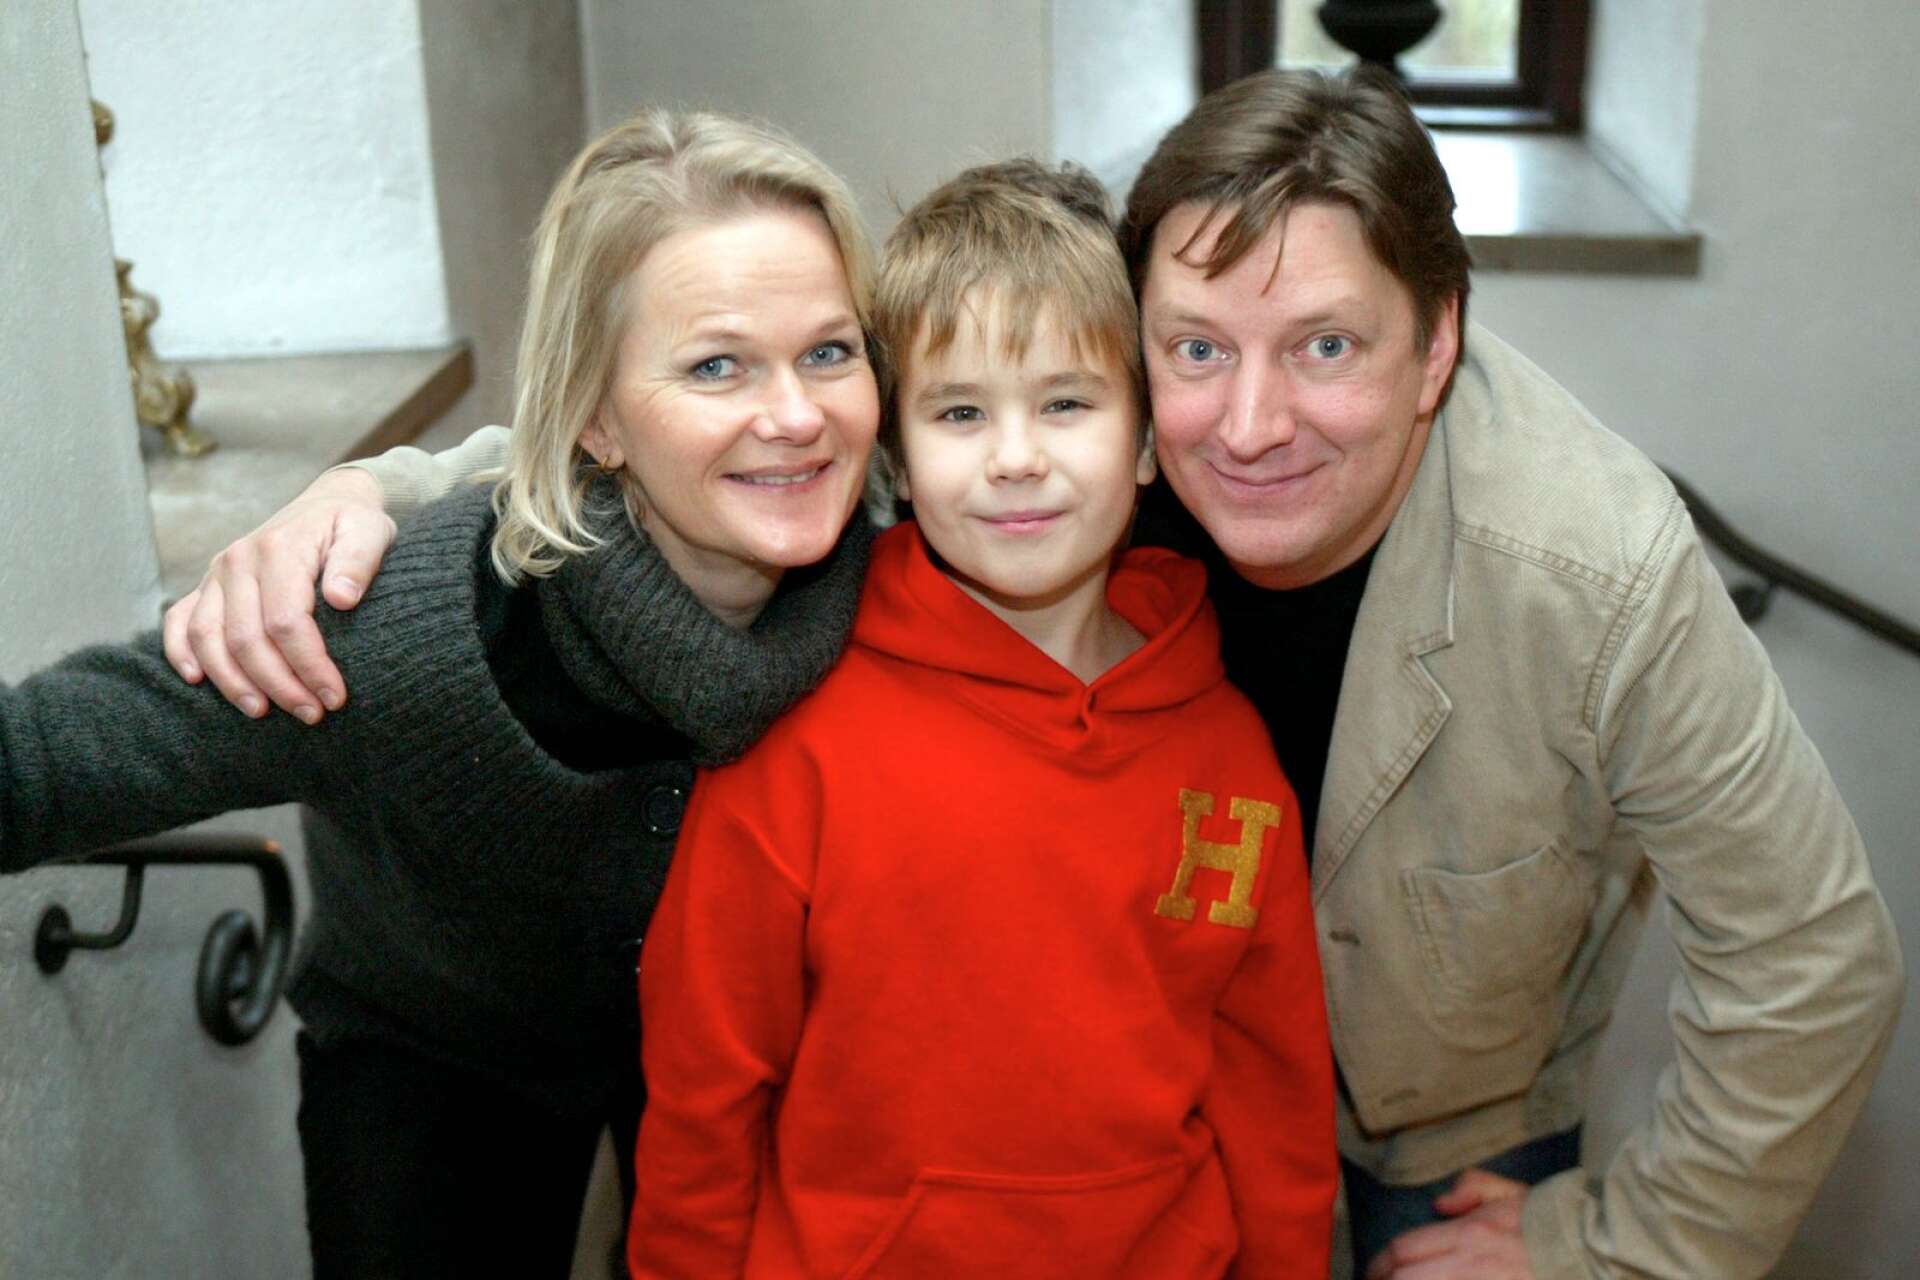 1991 gjorde barnboksförfattarna Sören Olsson och Anders Jacobssons succé med Sunes jul. 2003 fick de chansen igen och gjorde Håkan Bråkan med Sissela Kyle, Axel Skogberg och Per Svensson. 